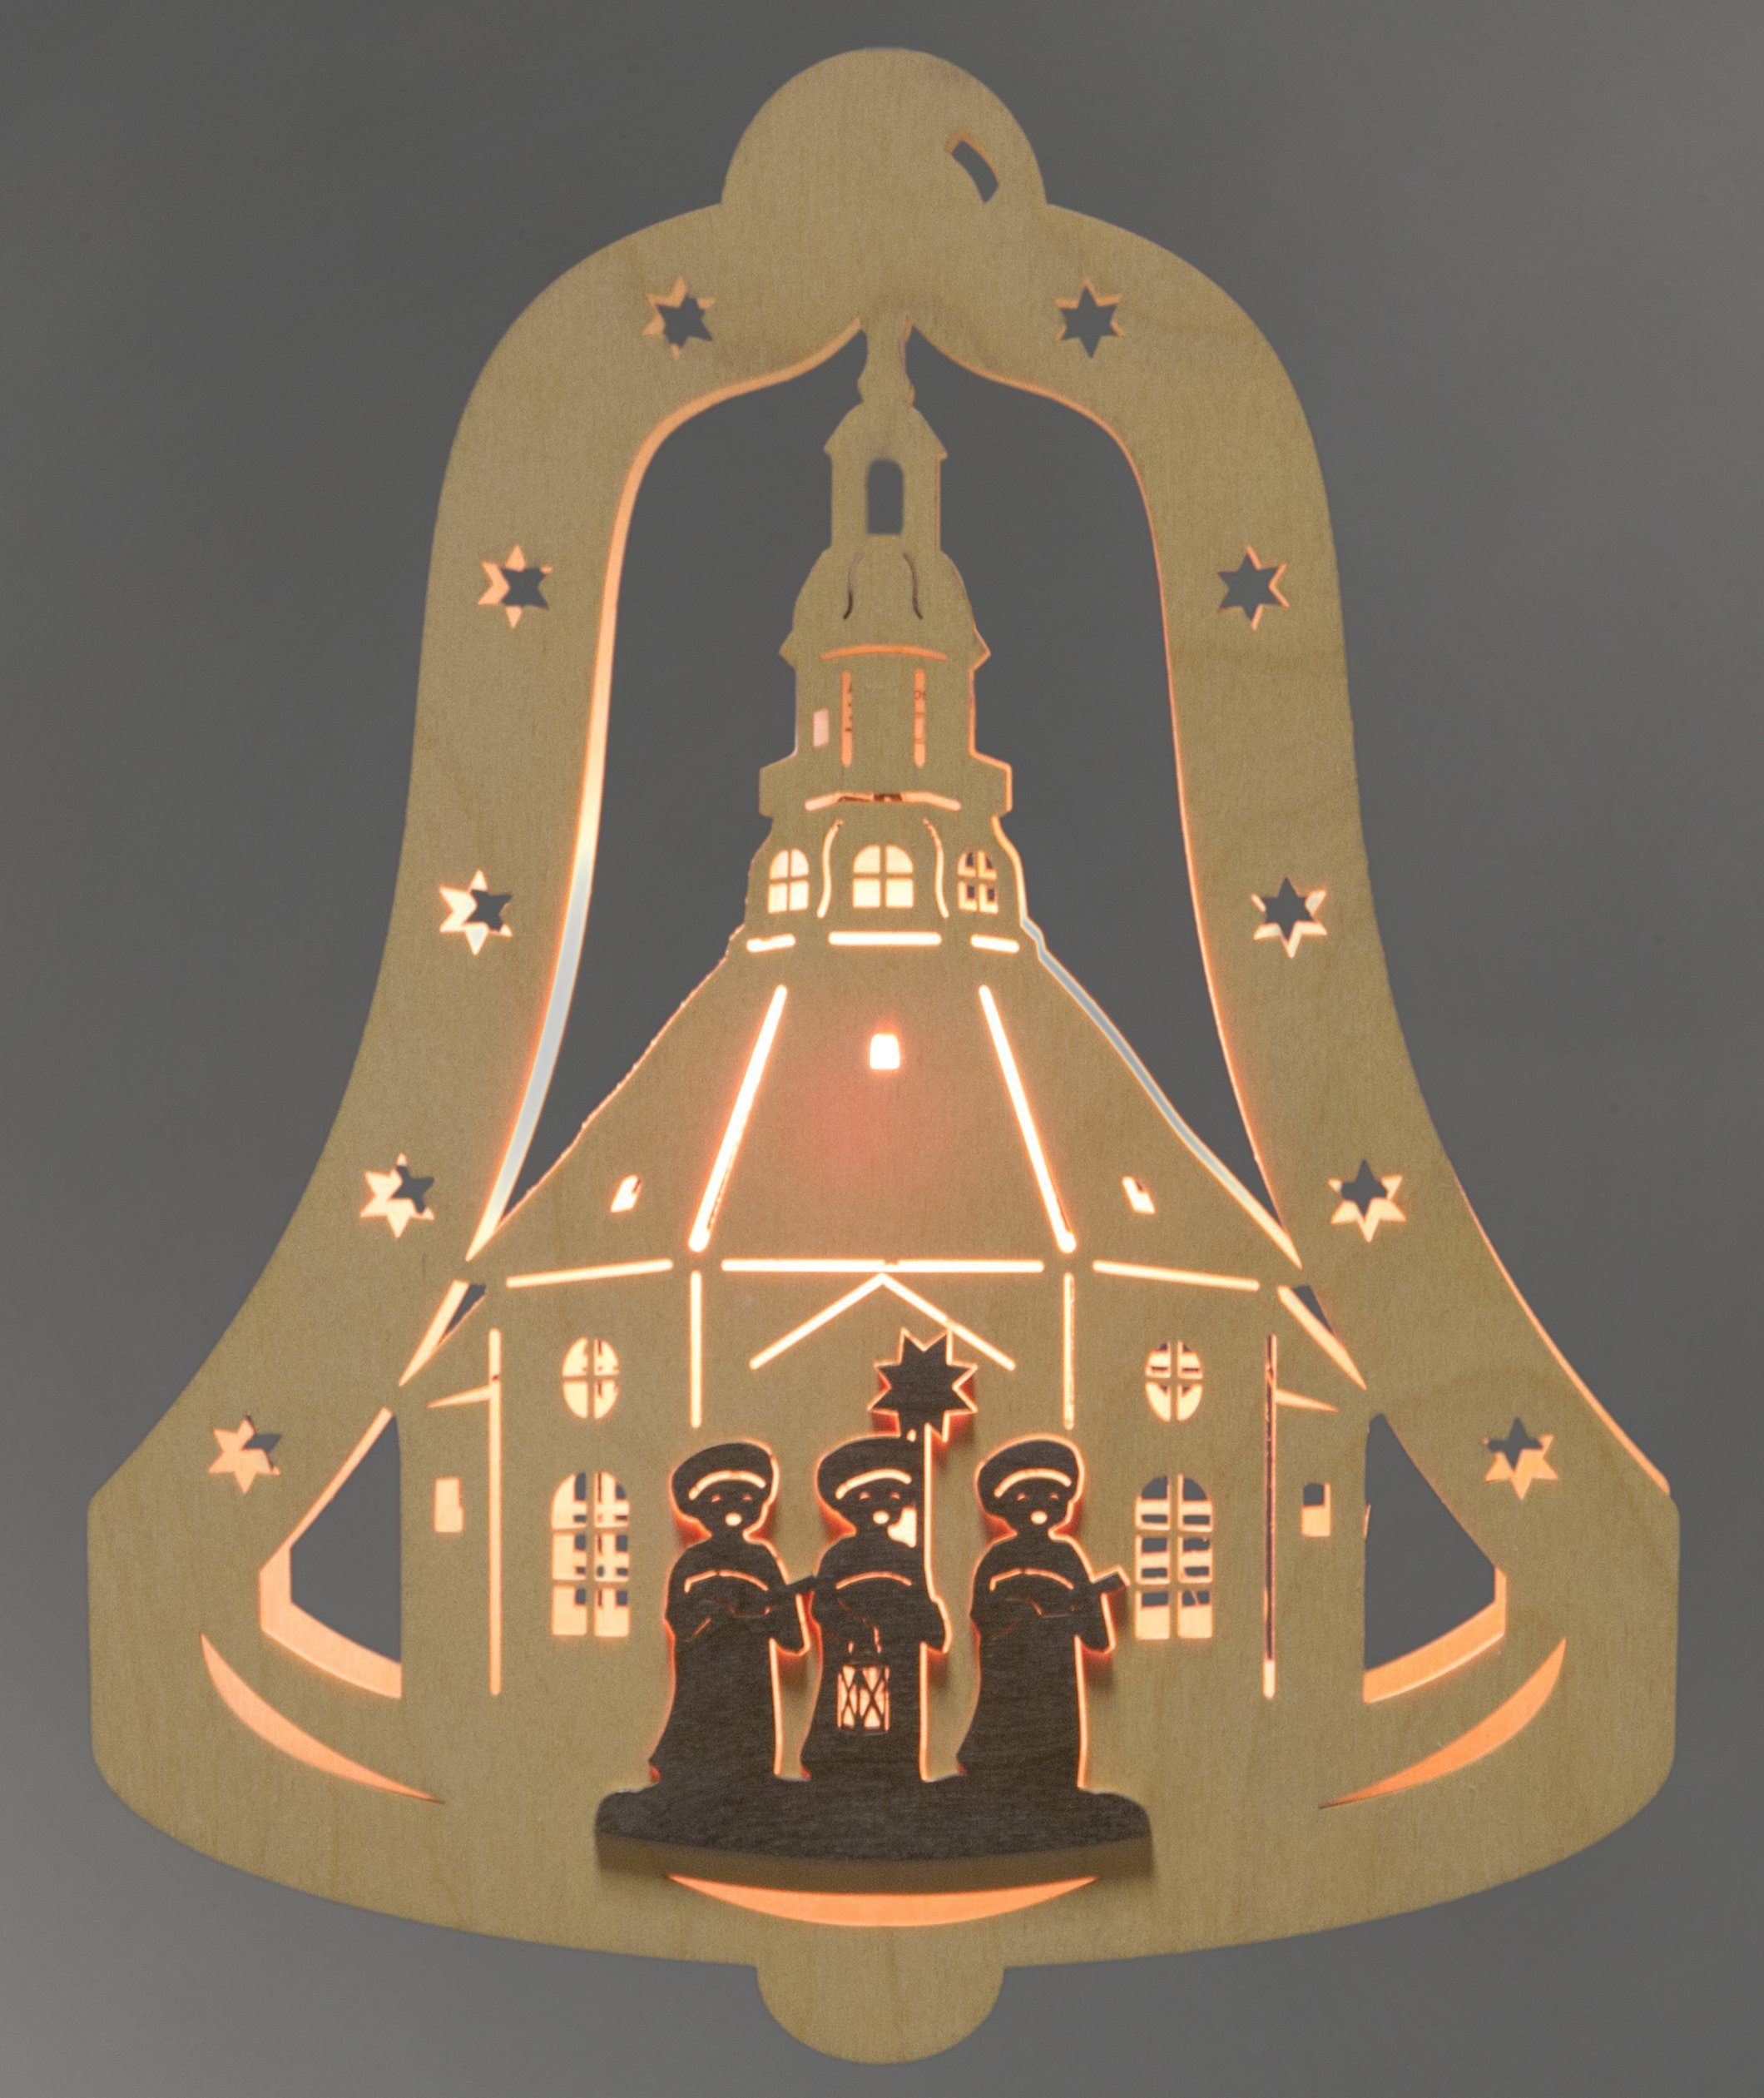 Weigla Dekolicht eingerahmt Glocke Motiv wechselbar, Kurrendesänger, in LED Weihnachtsdeko, Warmweiß